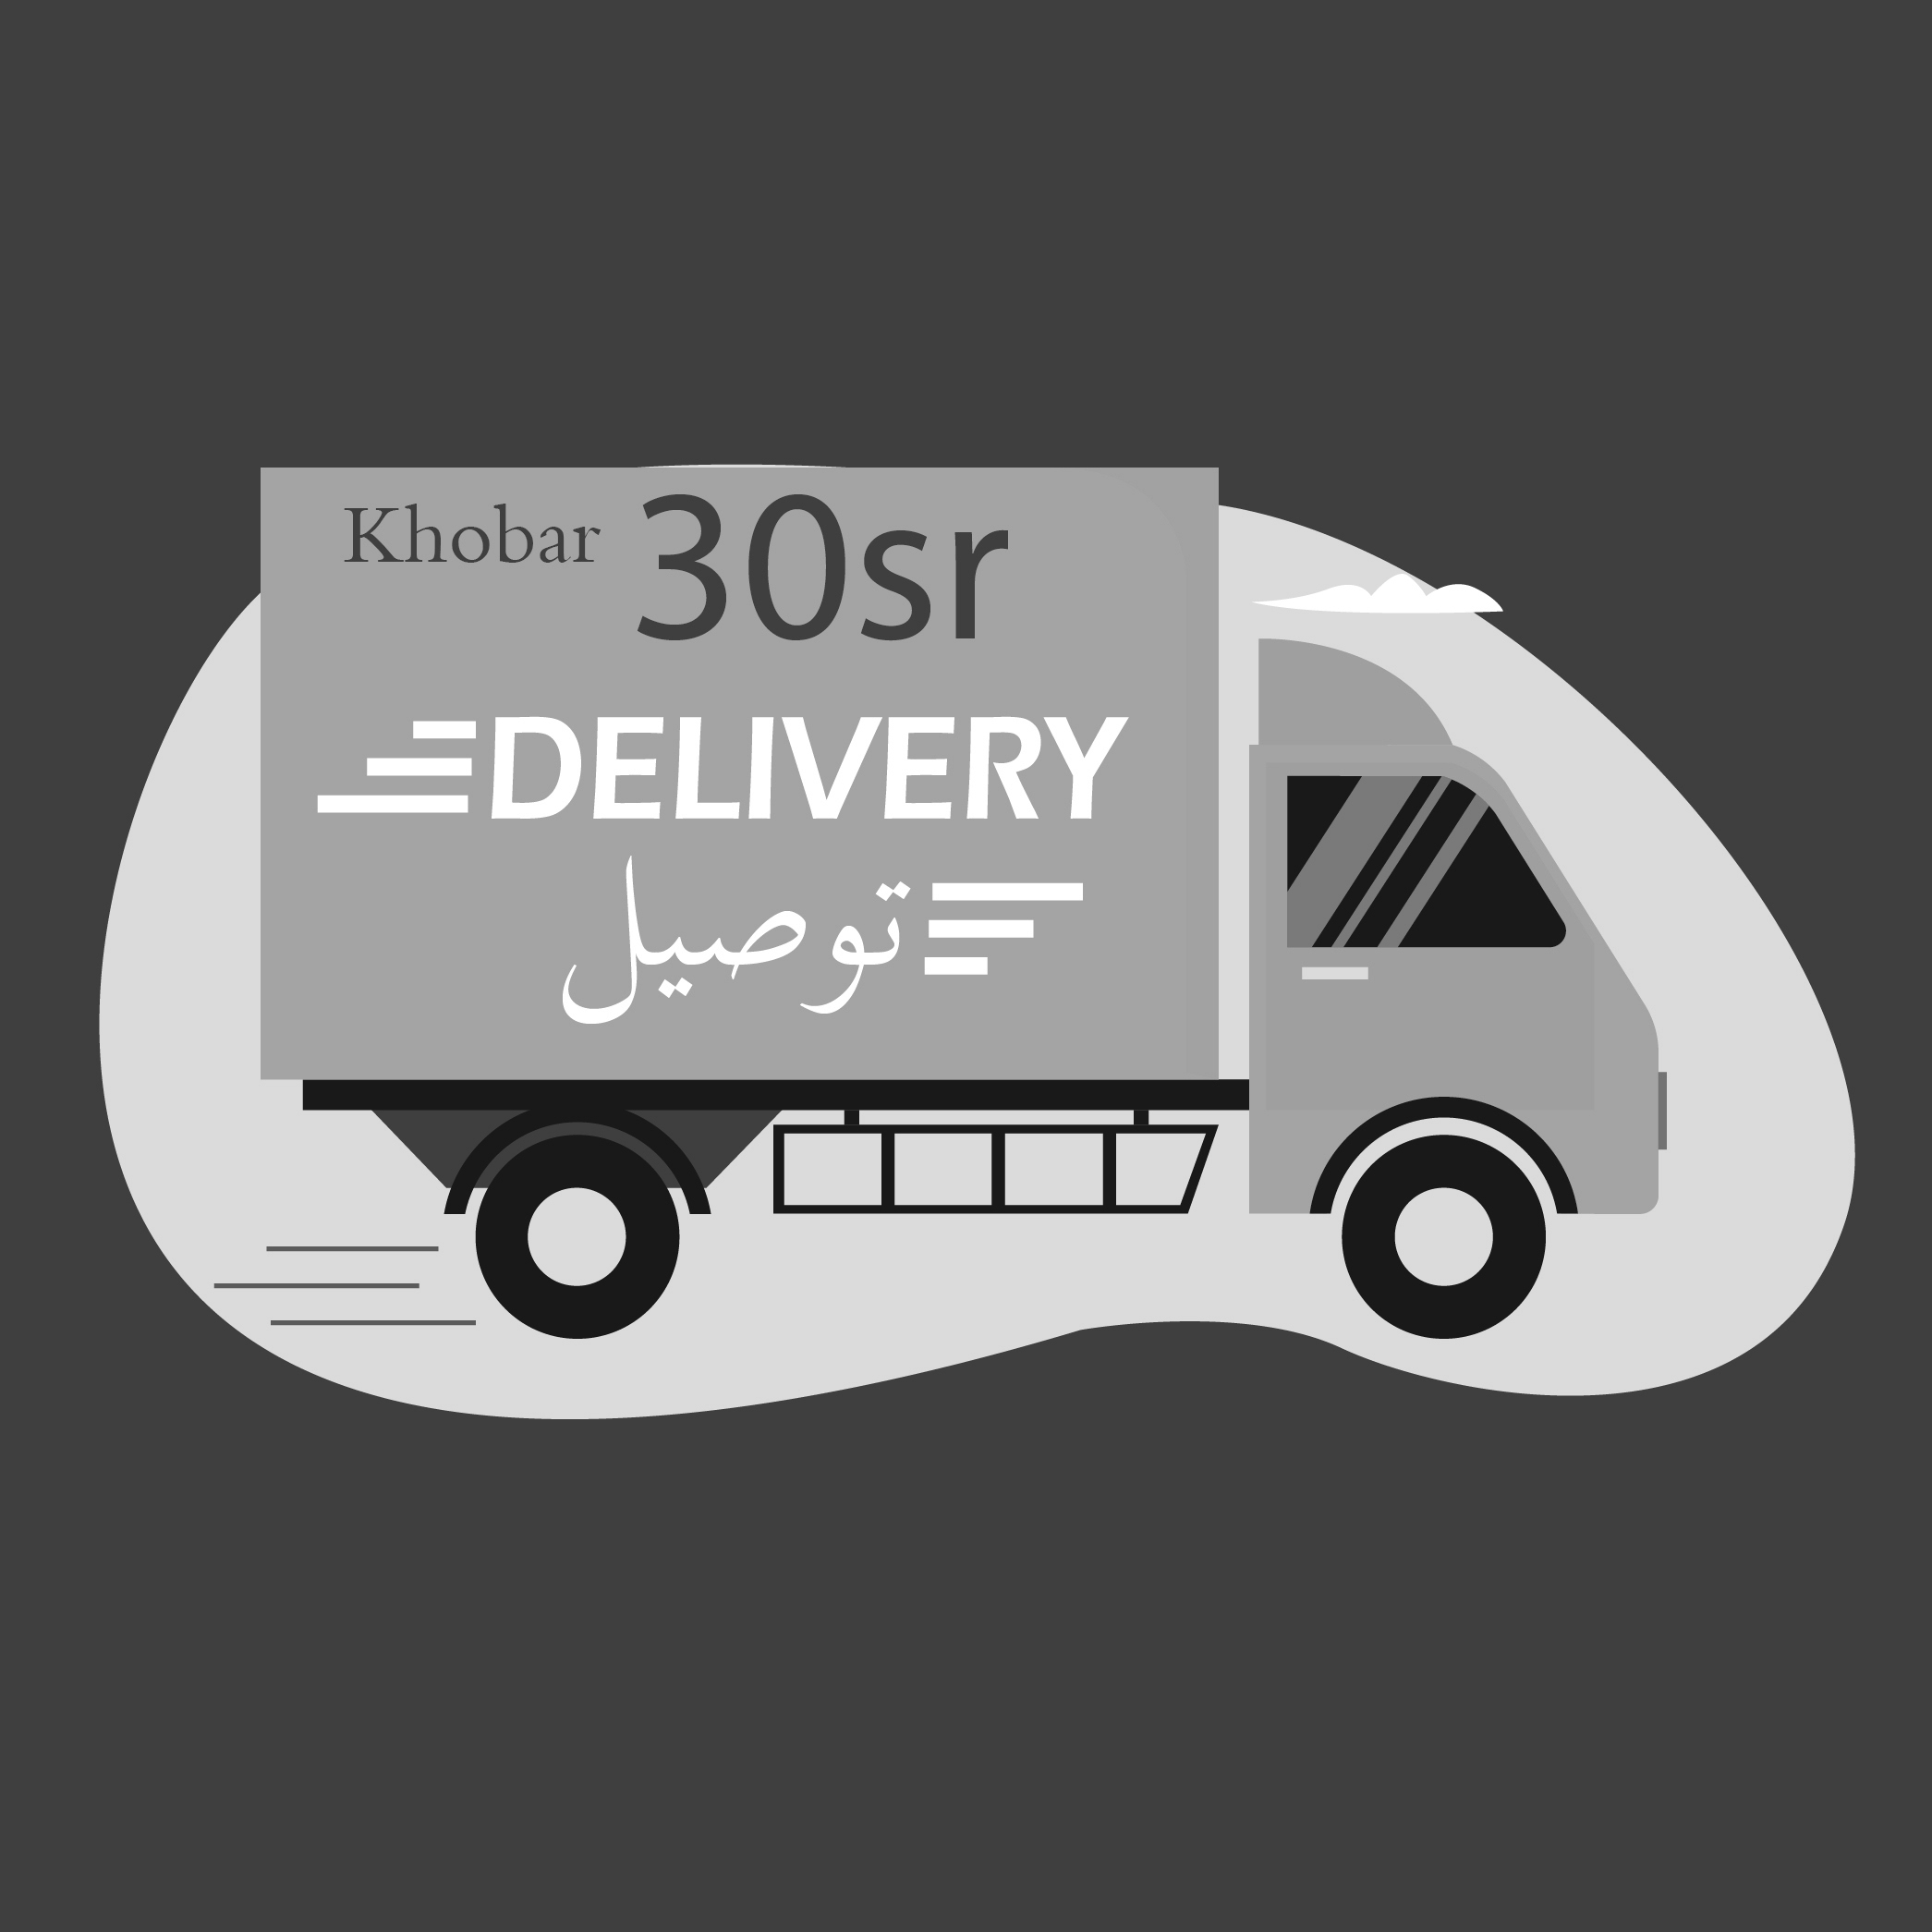 Delivery Khobar